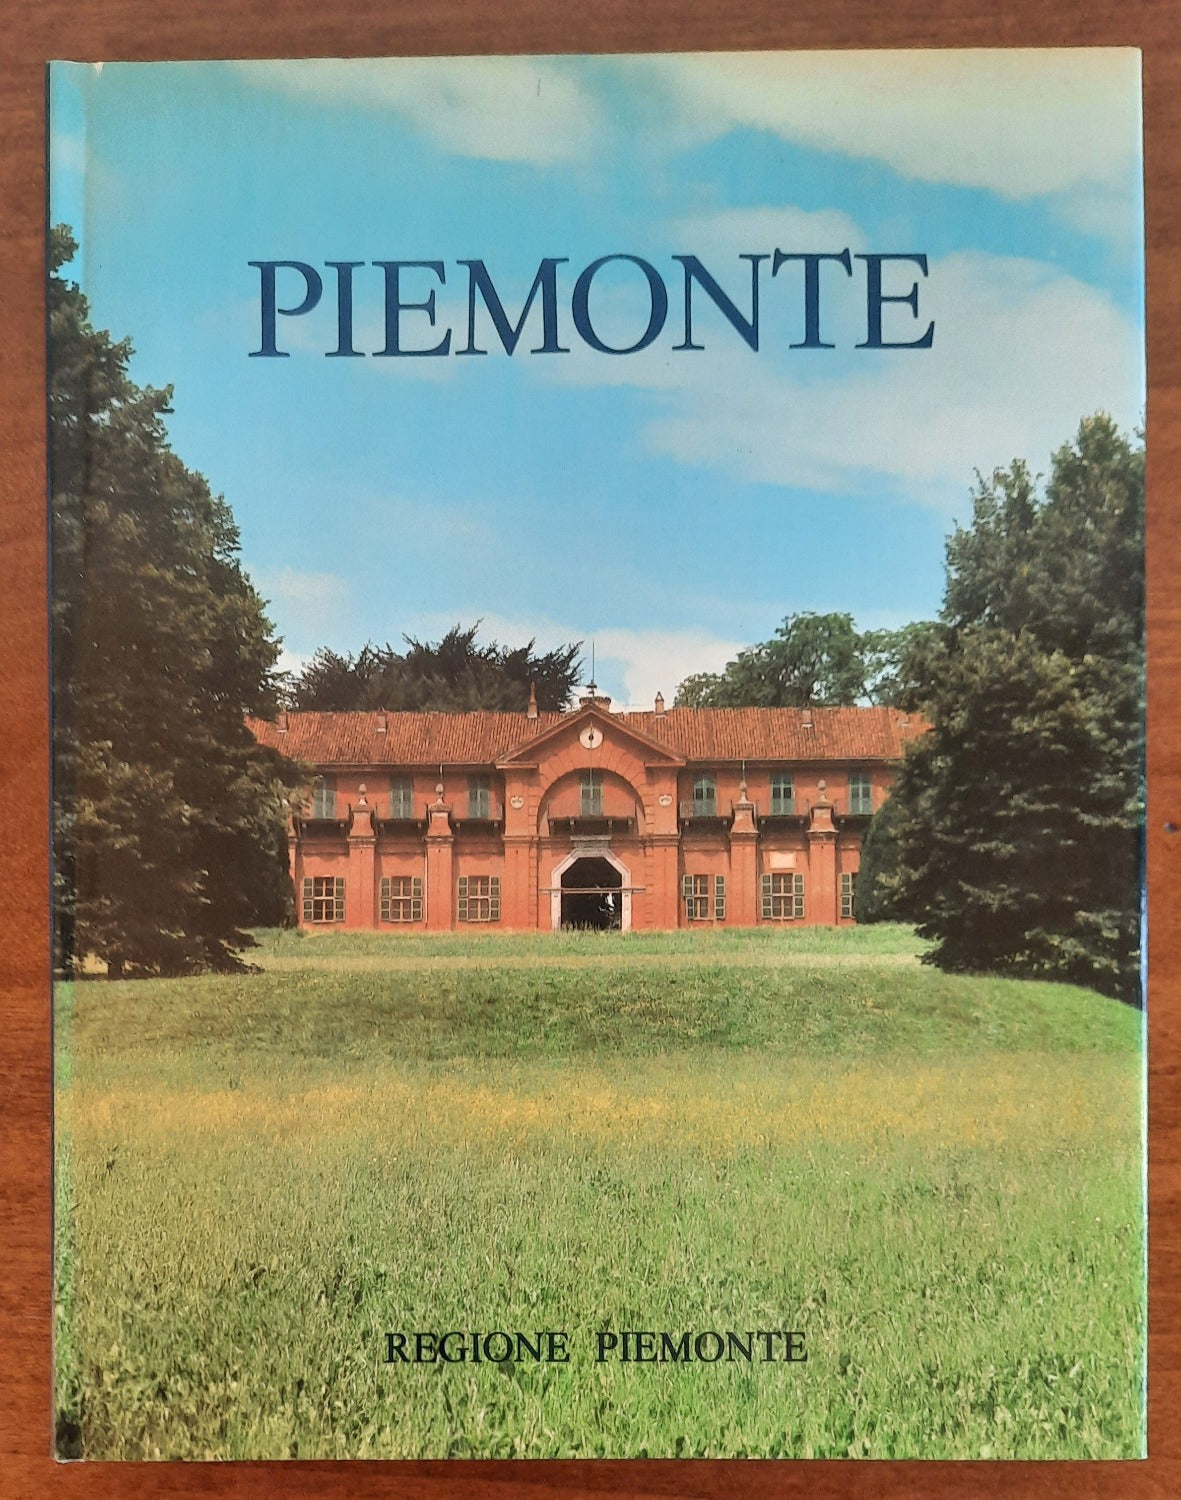 Piemonte - Regione Piemonte - 1981